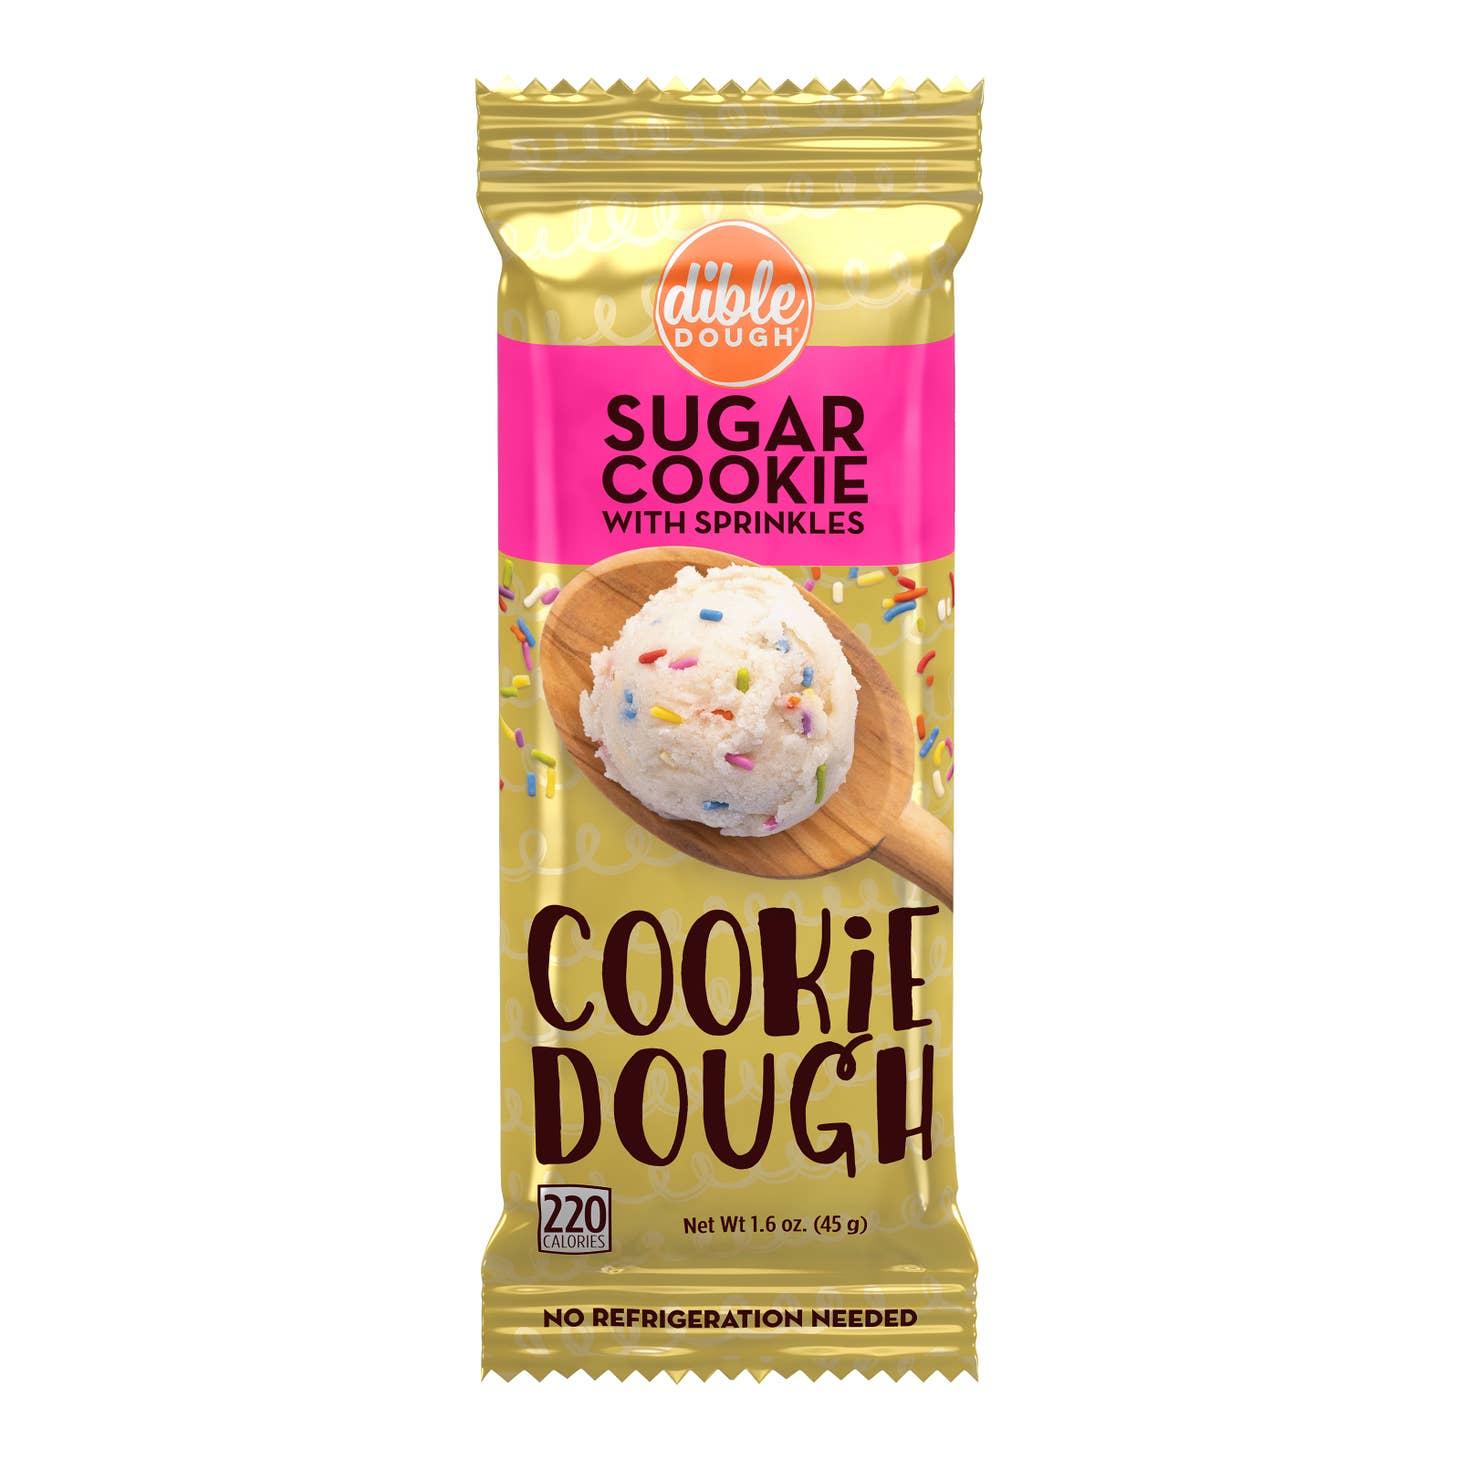 Dible Dough Edible Sugar Cookie Dough With Sprinkles